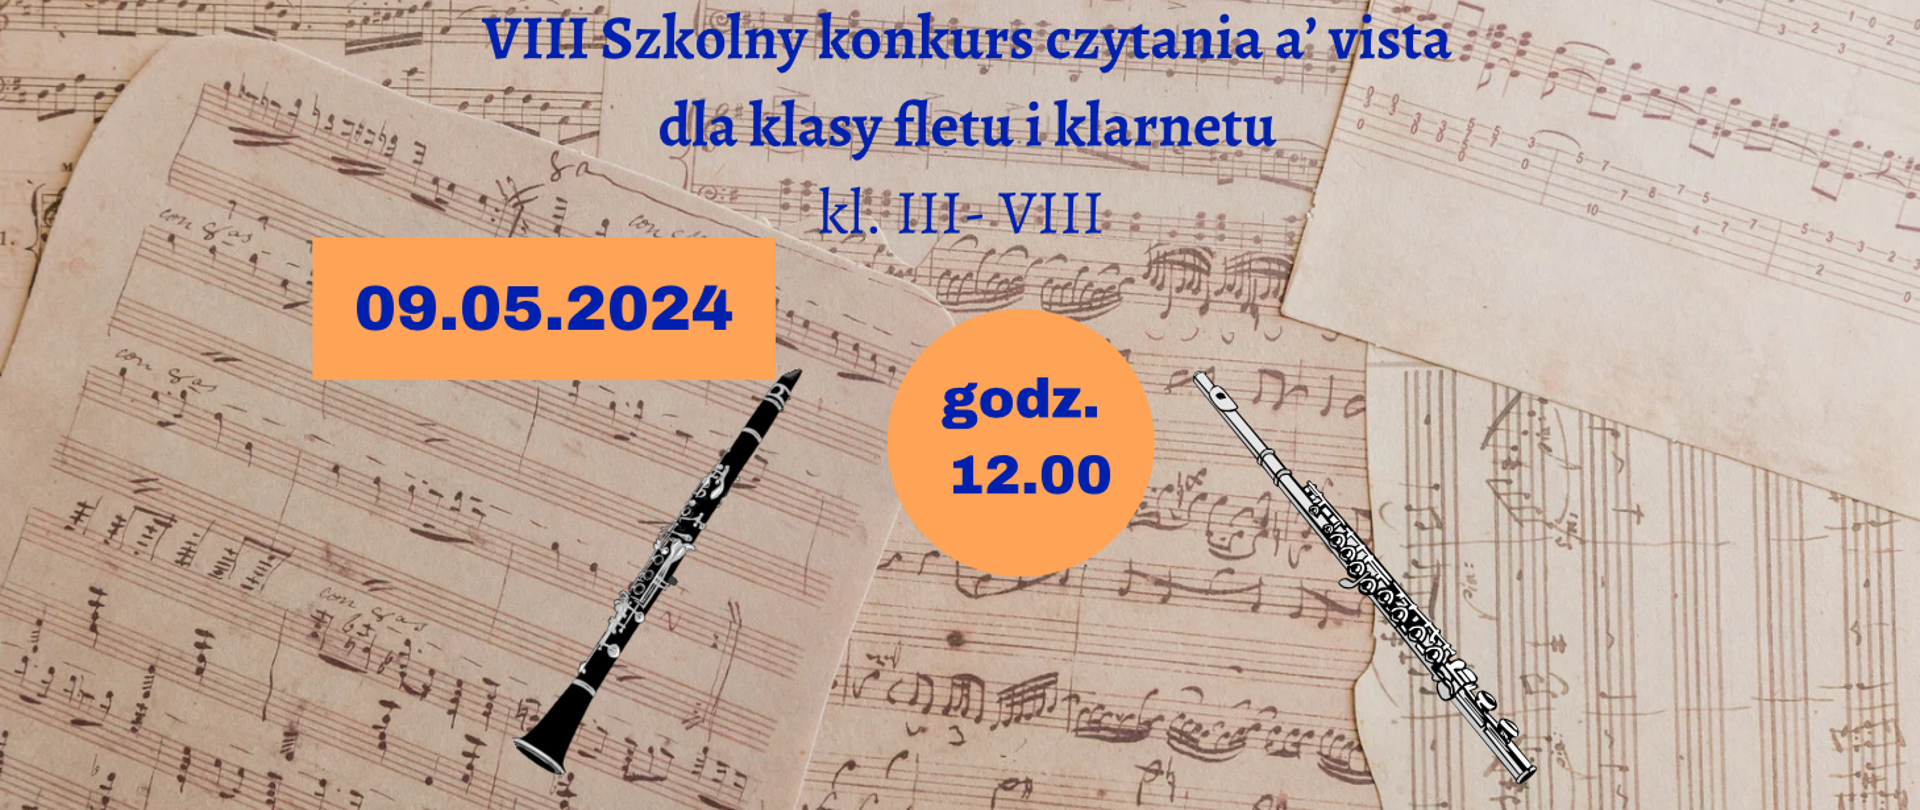 Na tle z rękopisów nutowych klarnet i flet. Na środku informacja: VIII Szkolny konkurs czytania a'vista klas fletu i klarnetu 09/05.2024r. 